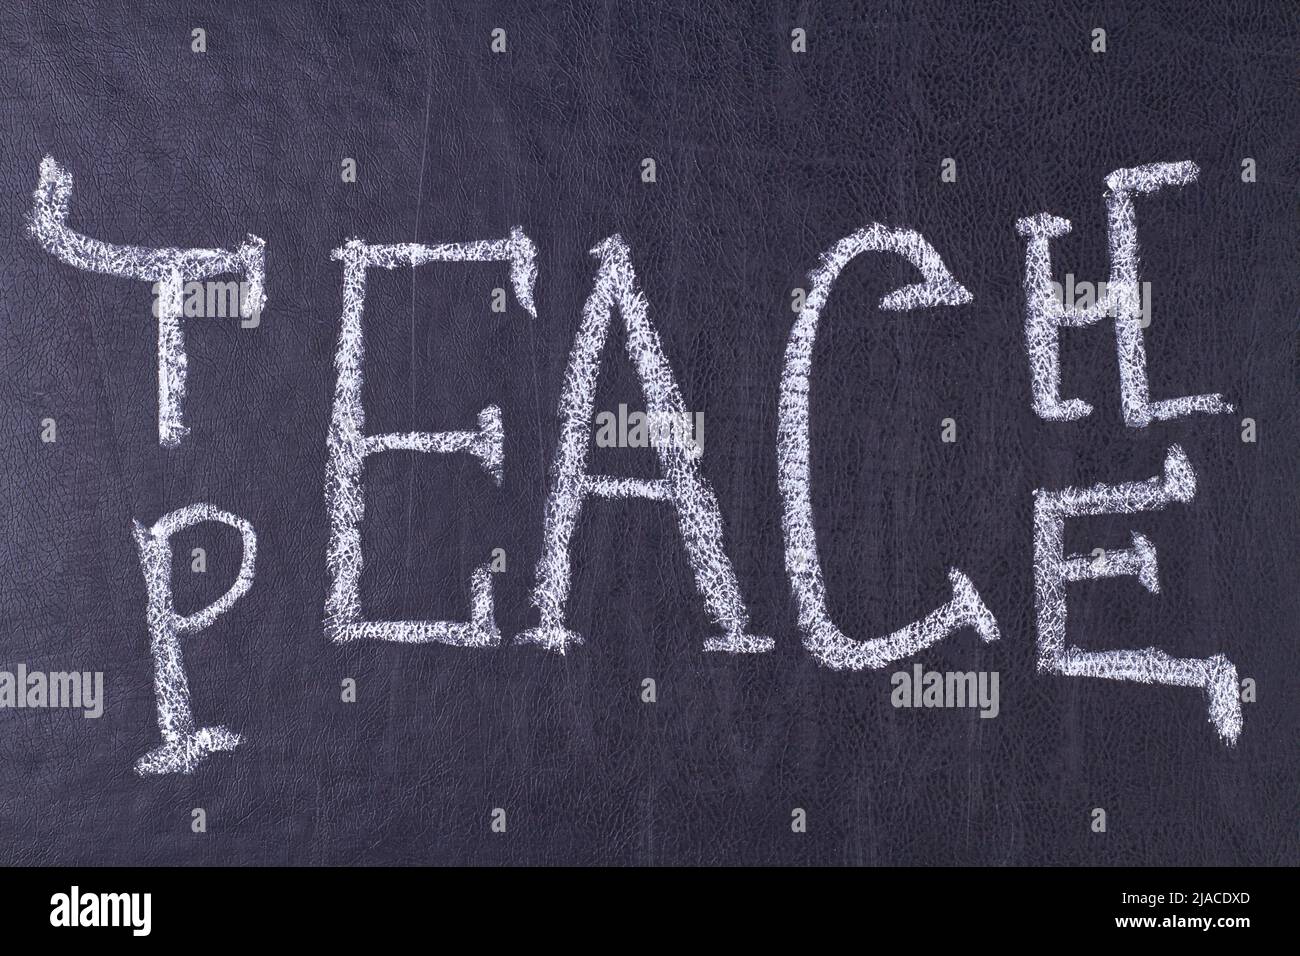 Wort lehren Frieden geschrieben auf schwarzer Tafel Nahaufnahme. Bildung und Menschlichkeit Konzept. Stockfoto